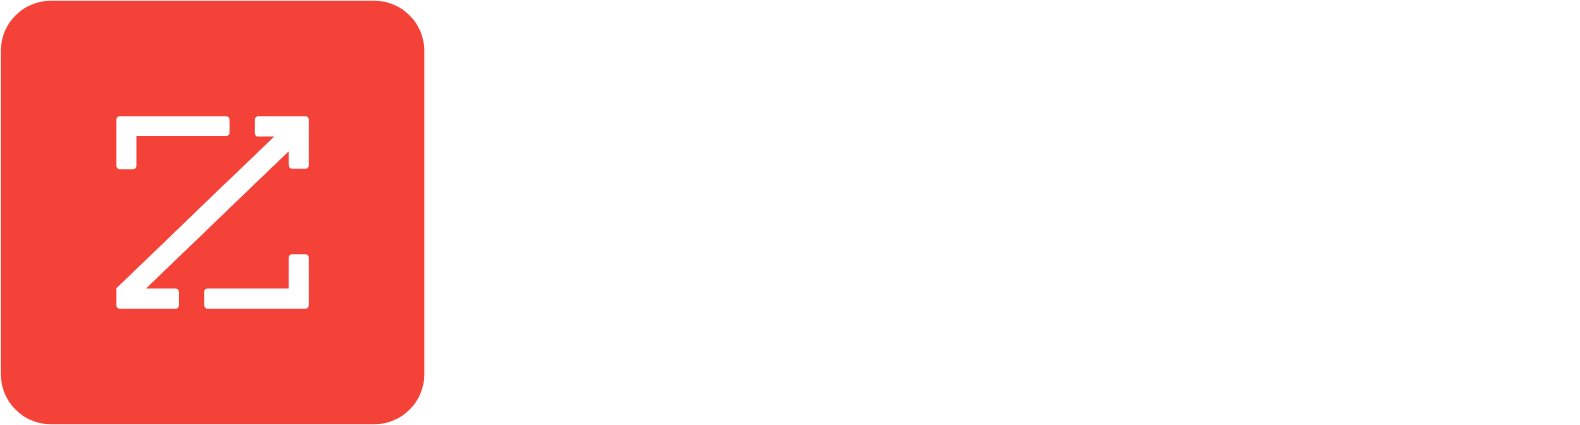 ZoomInfo logo grand pour les fonds sombres (PNG transparent)